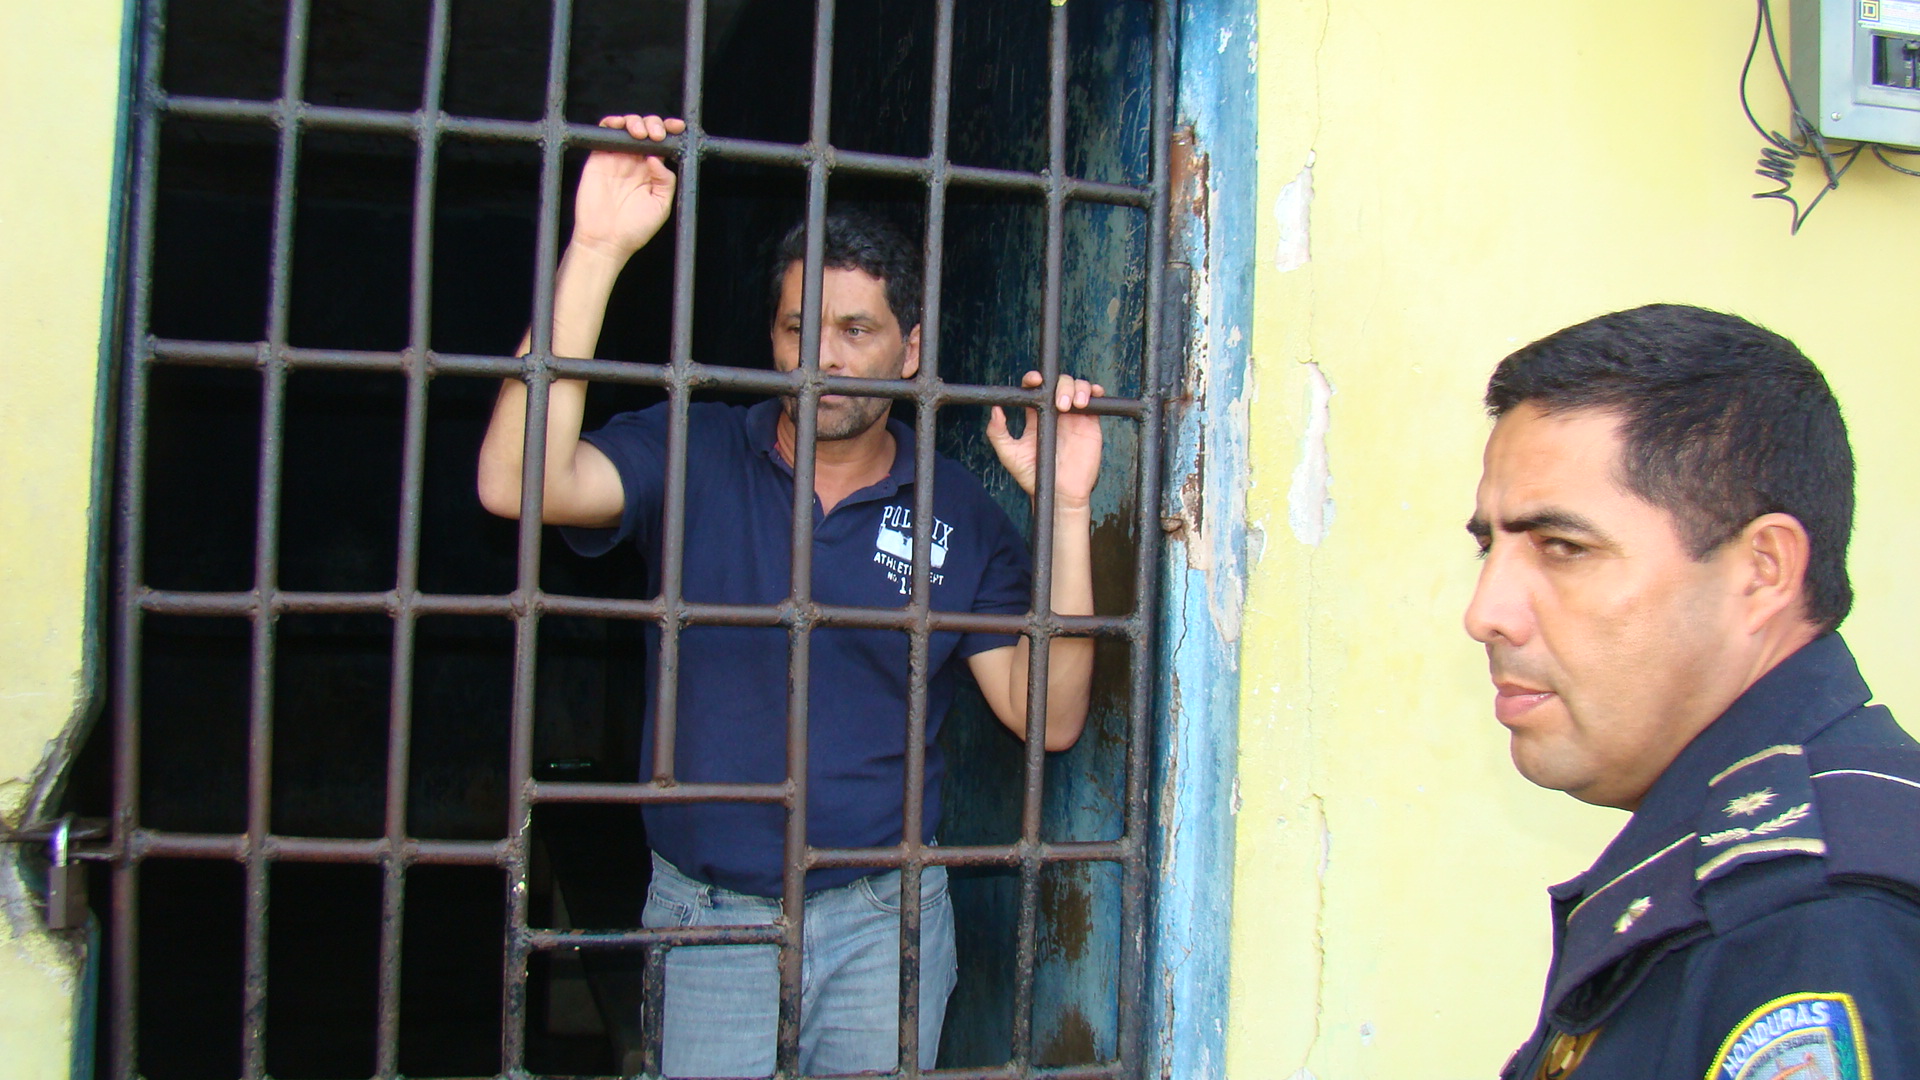 Magistrada de San Pedro Sula tuerce el brazo a la justicia para cometer arbitraria detención por mas de 8 horas contra defensor de derechos humanos.